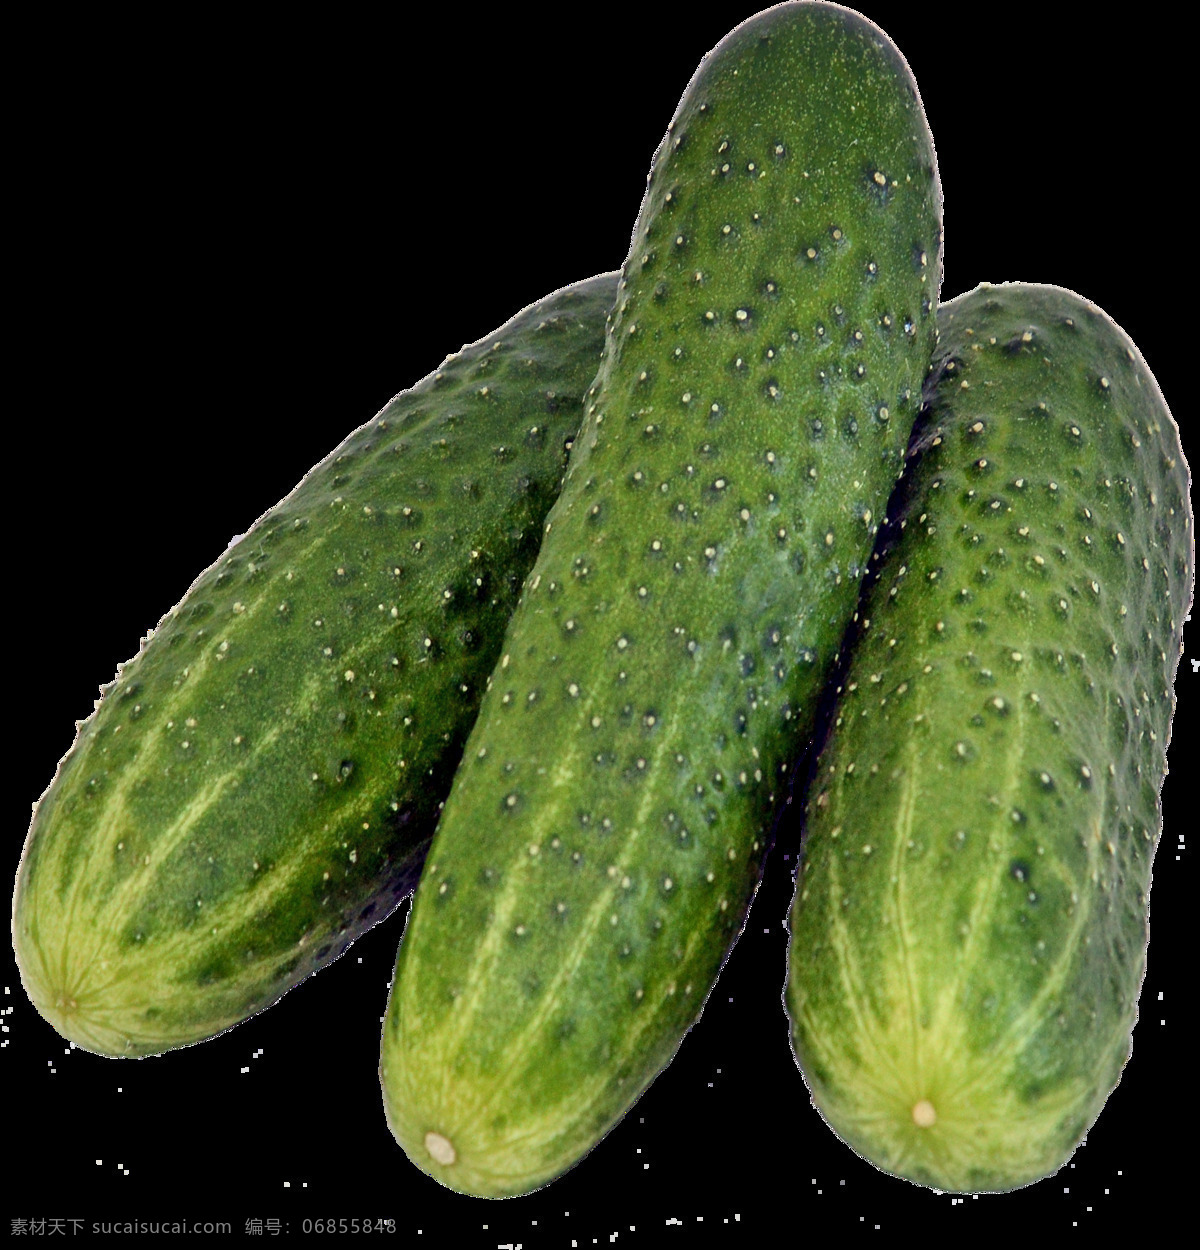 黄瓜 瓜 青瓜 素菜 绿色 新鲜 食材 农作物 生物世界 蔬菜 生活用品 生活百科